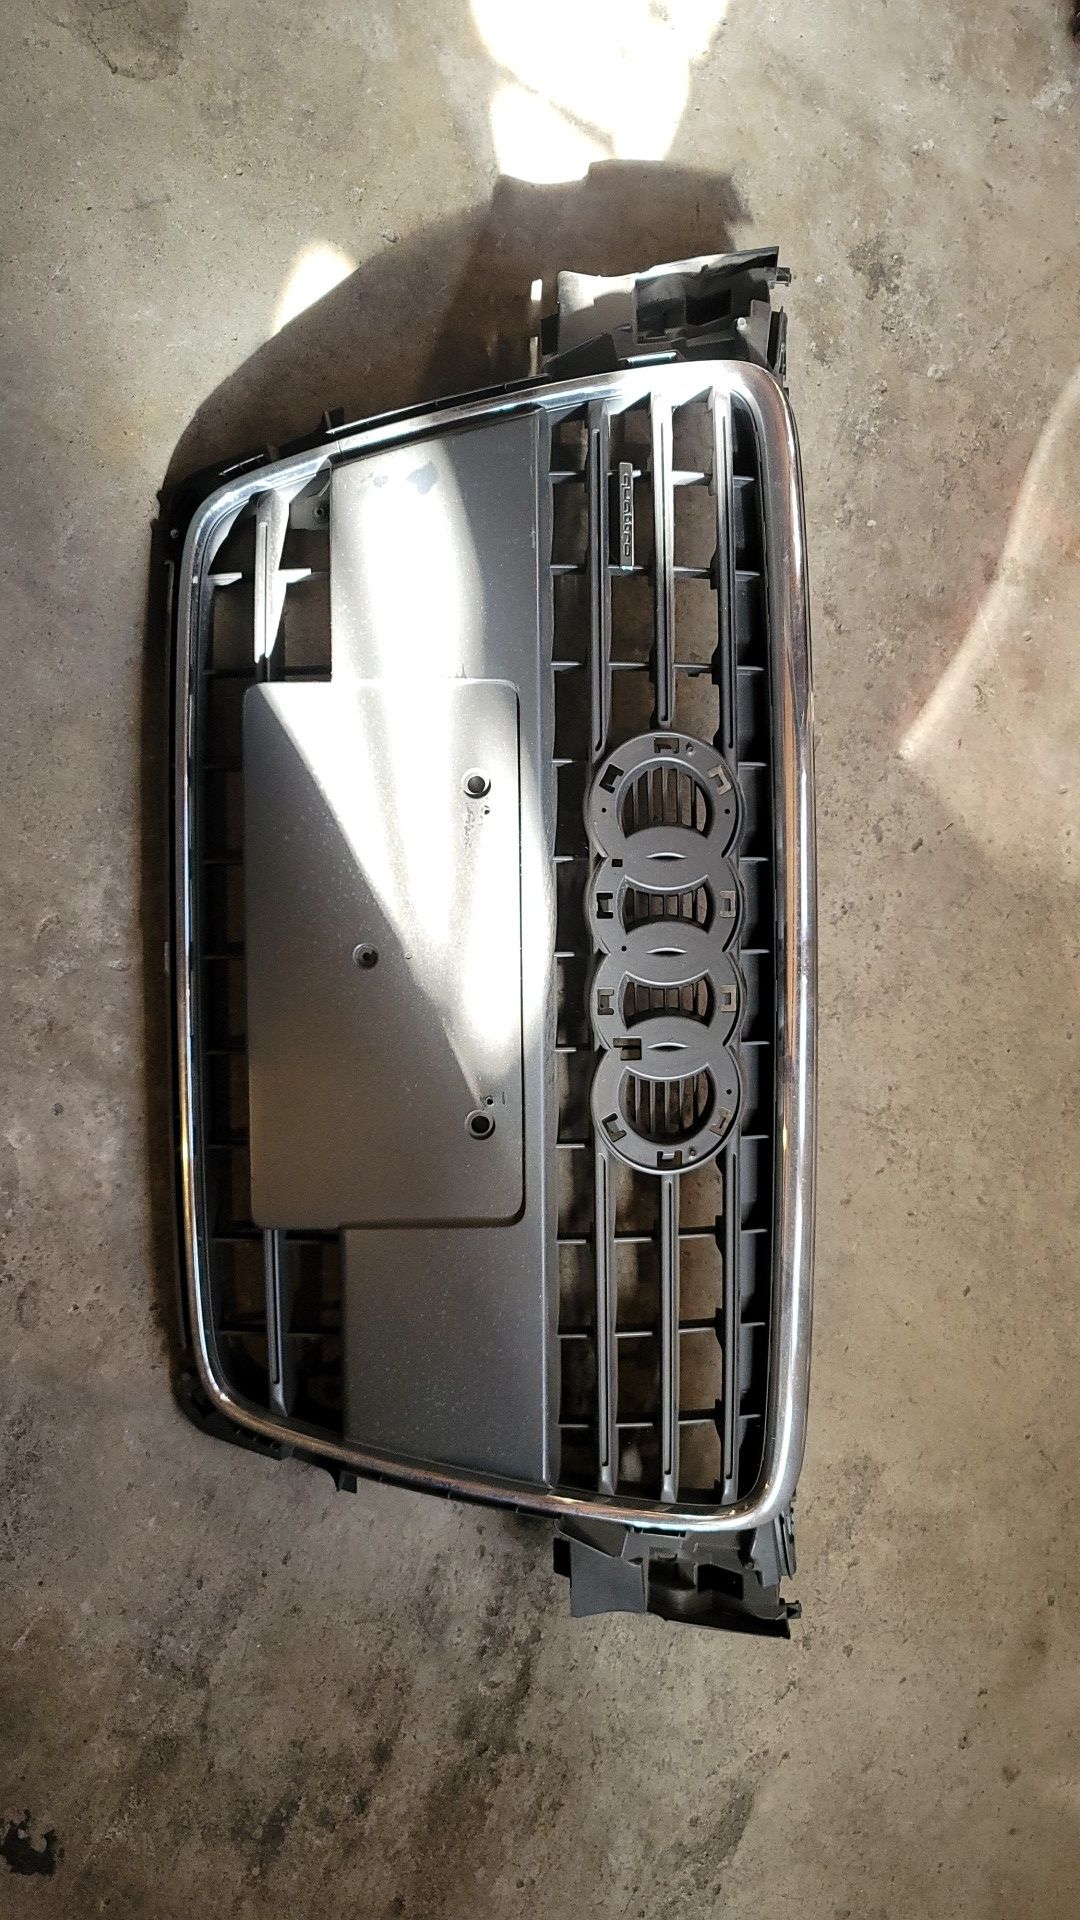 2012 Audi a4 Quattro front grill